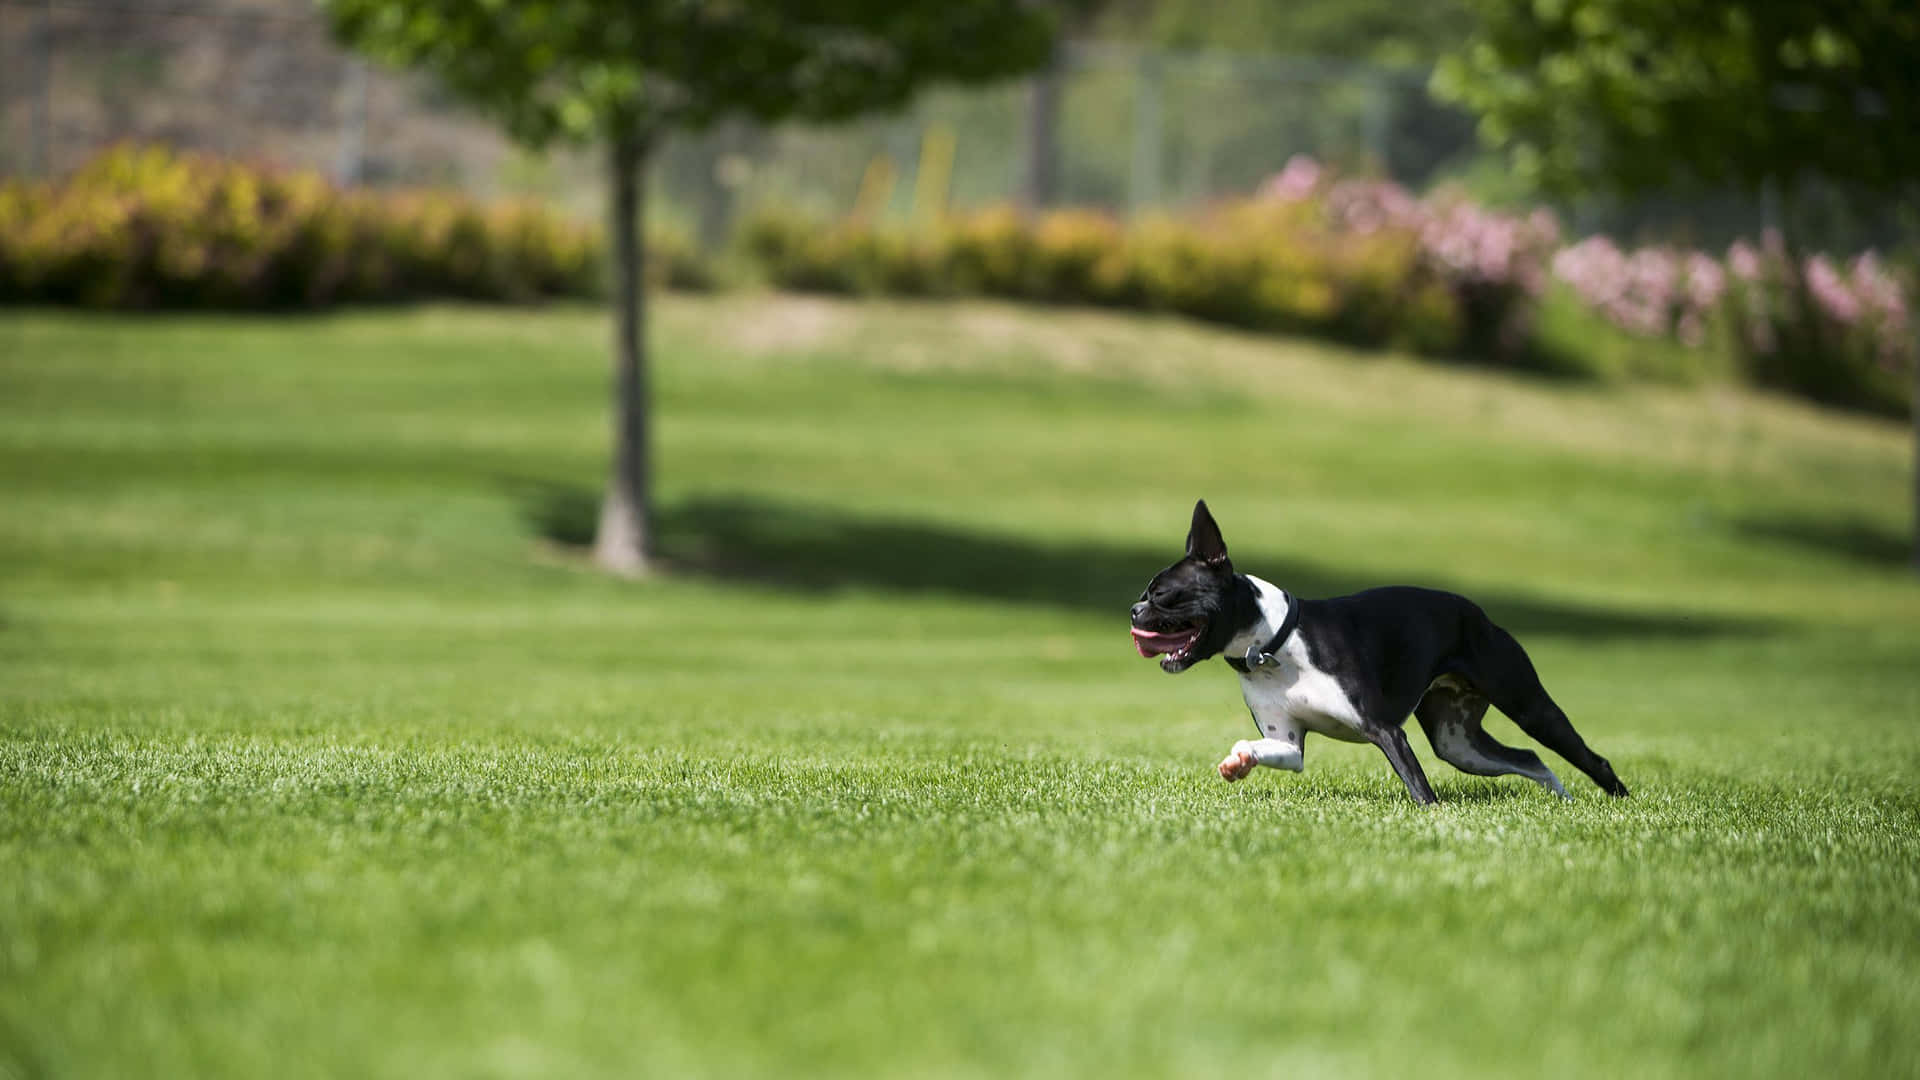 Fotode Un Boston Terrier Corriendo Rápido.